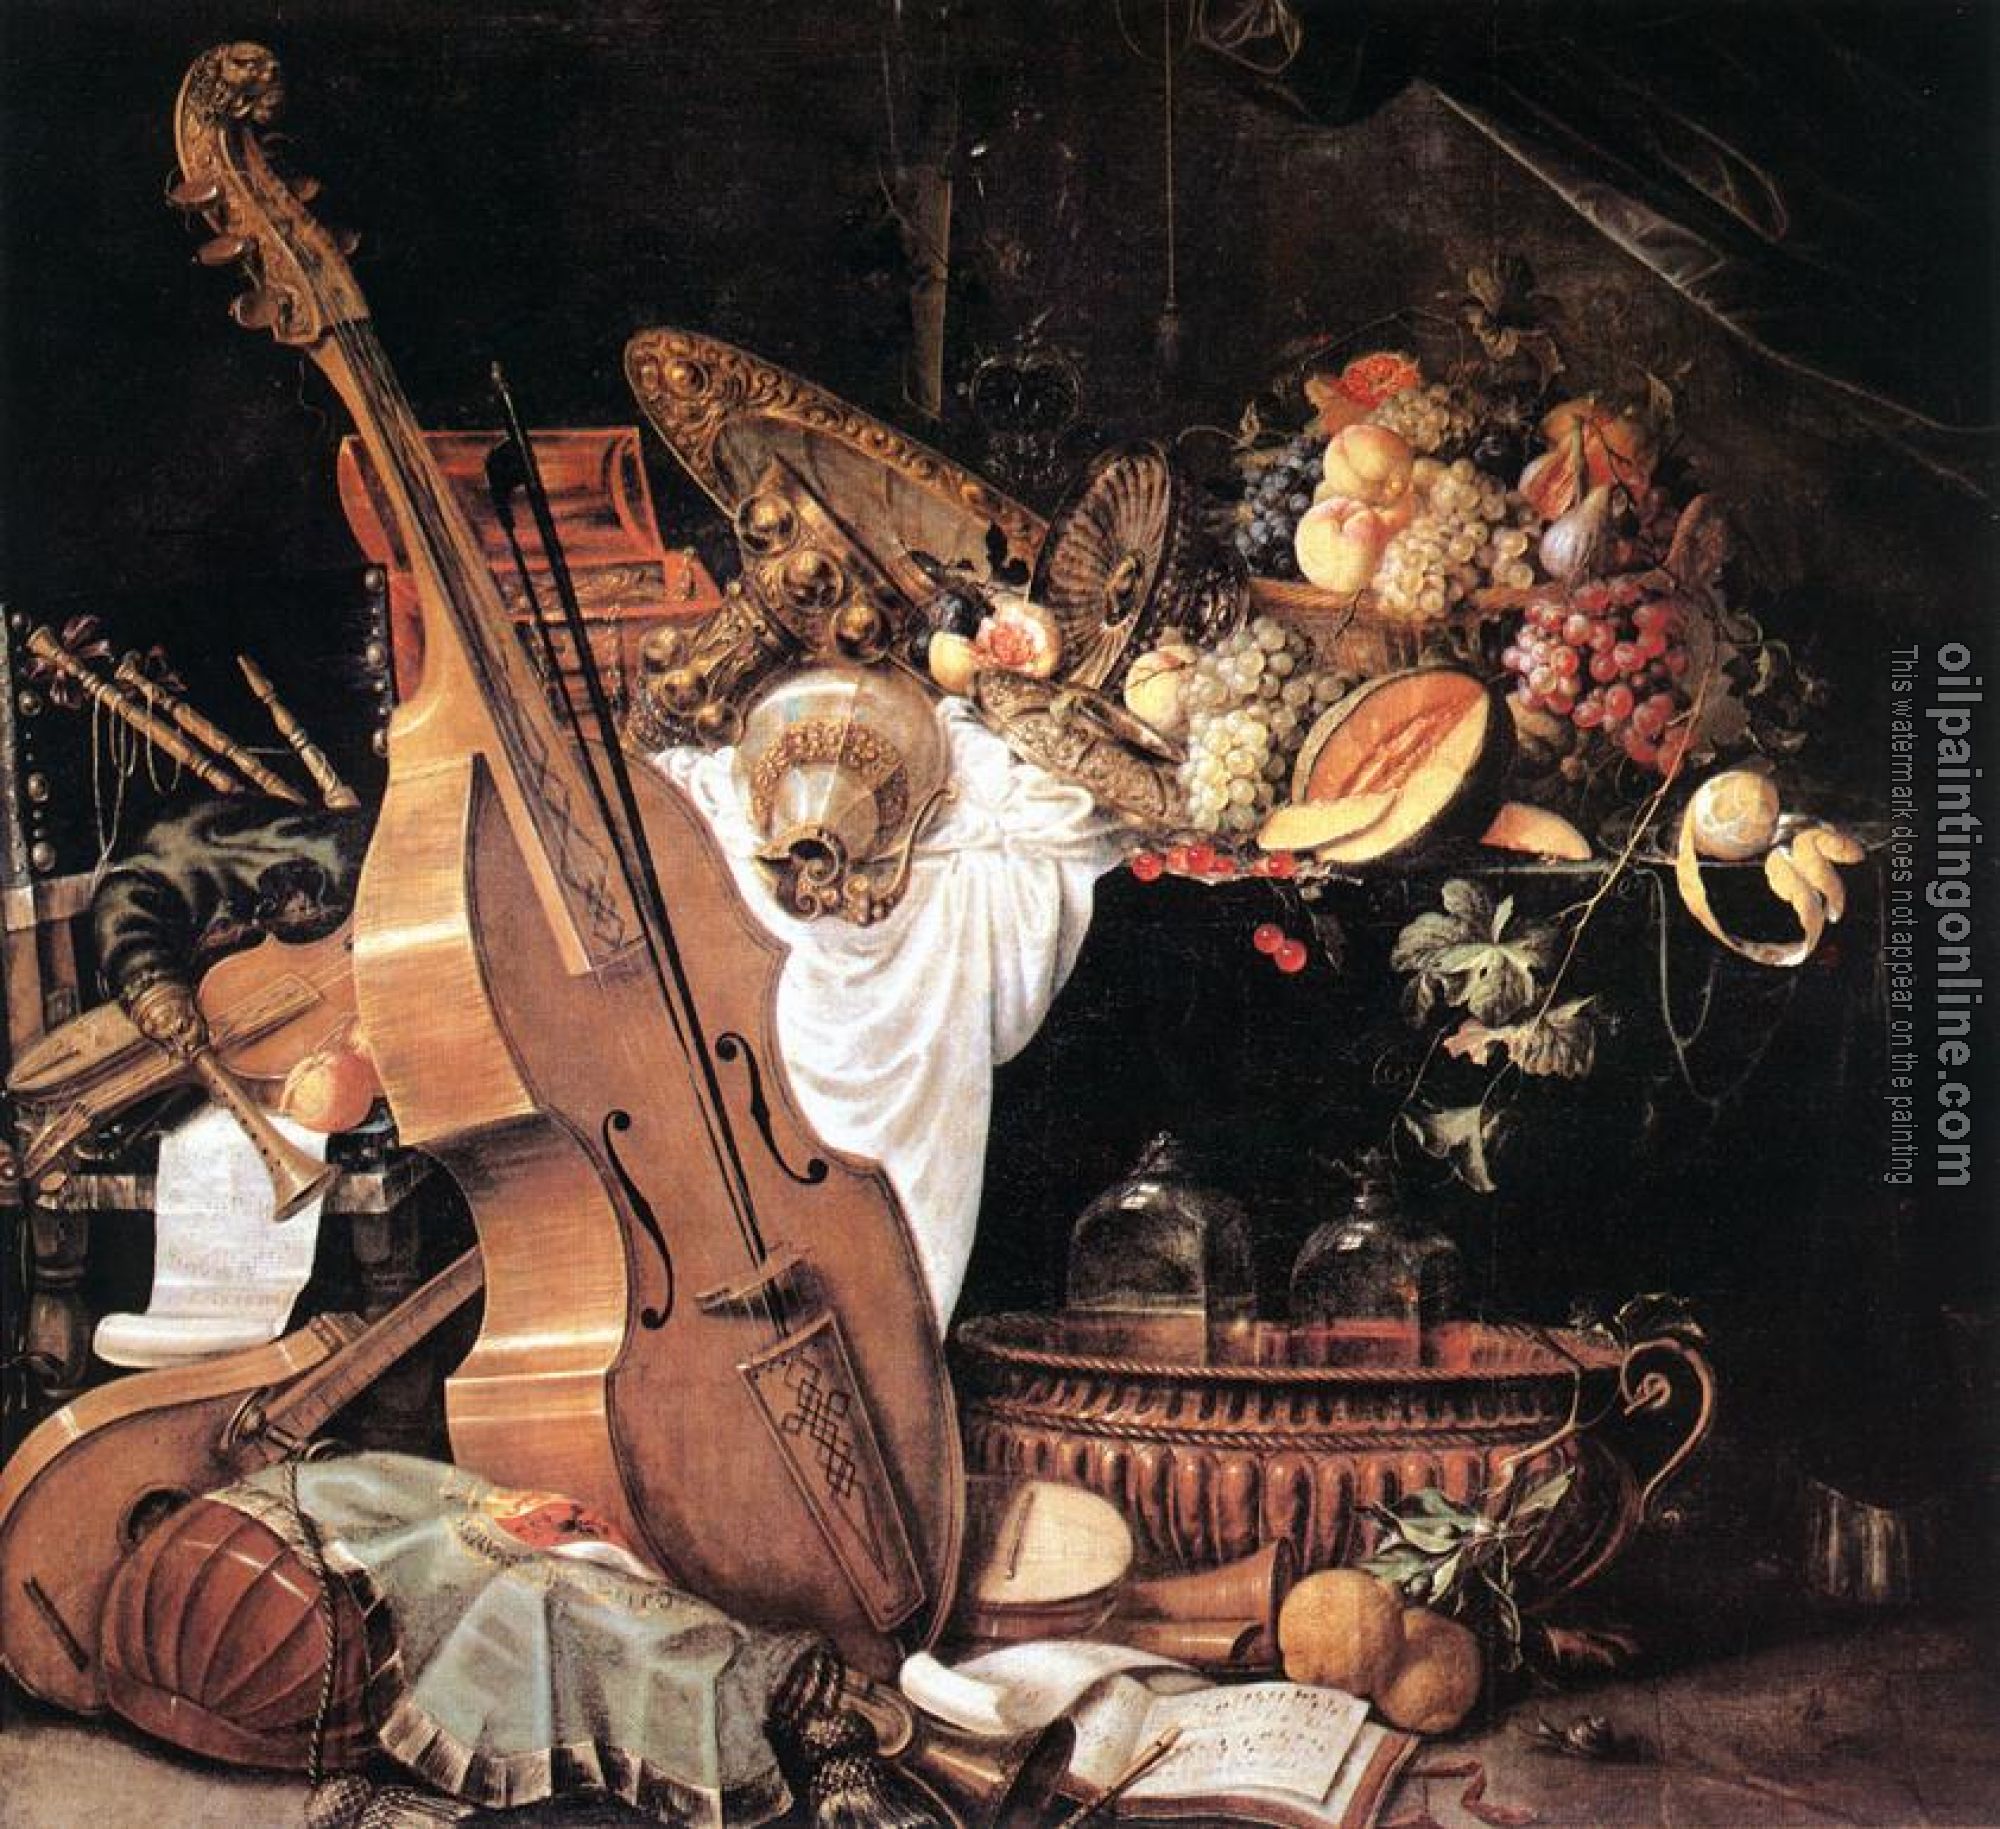 Heem, Cornelis de - Vanitas Still-Life with Musical Instruments